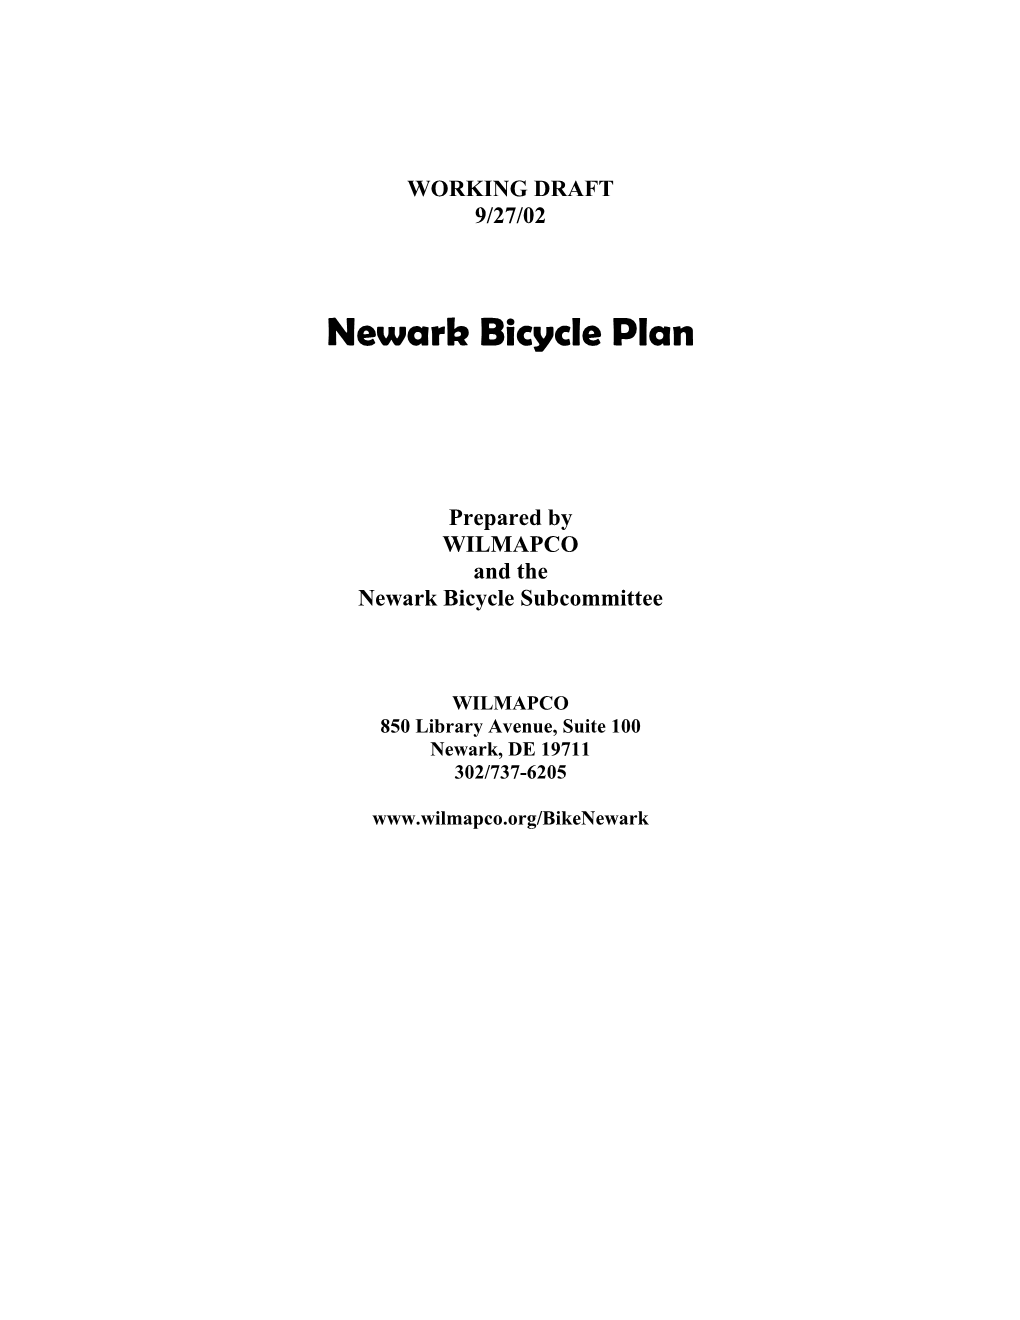 Newark Bicycle Plan